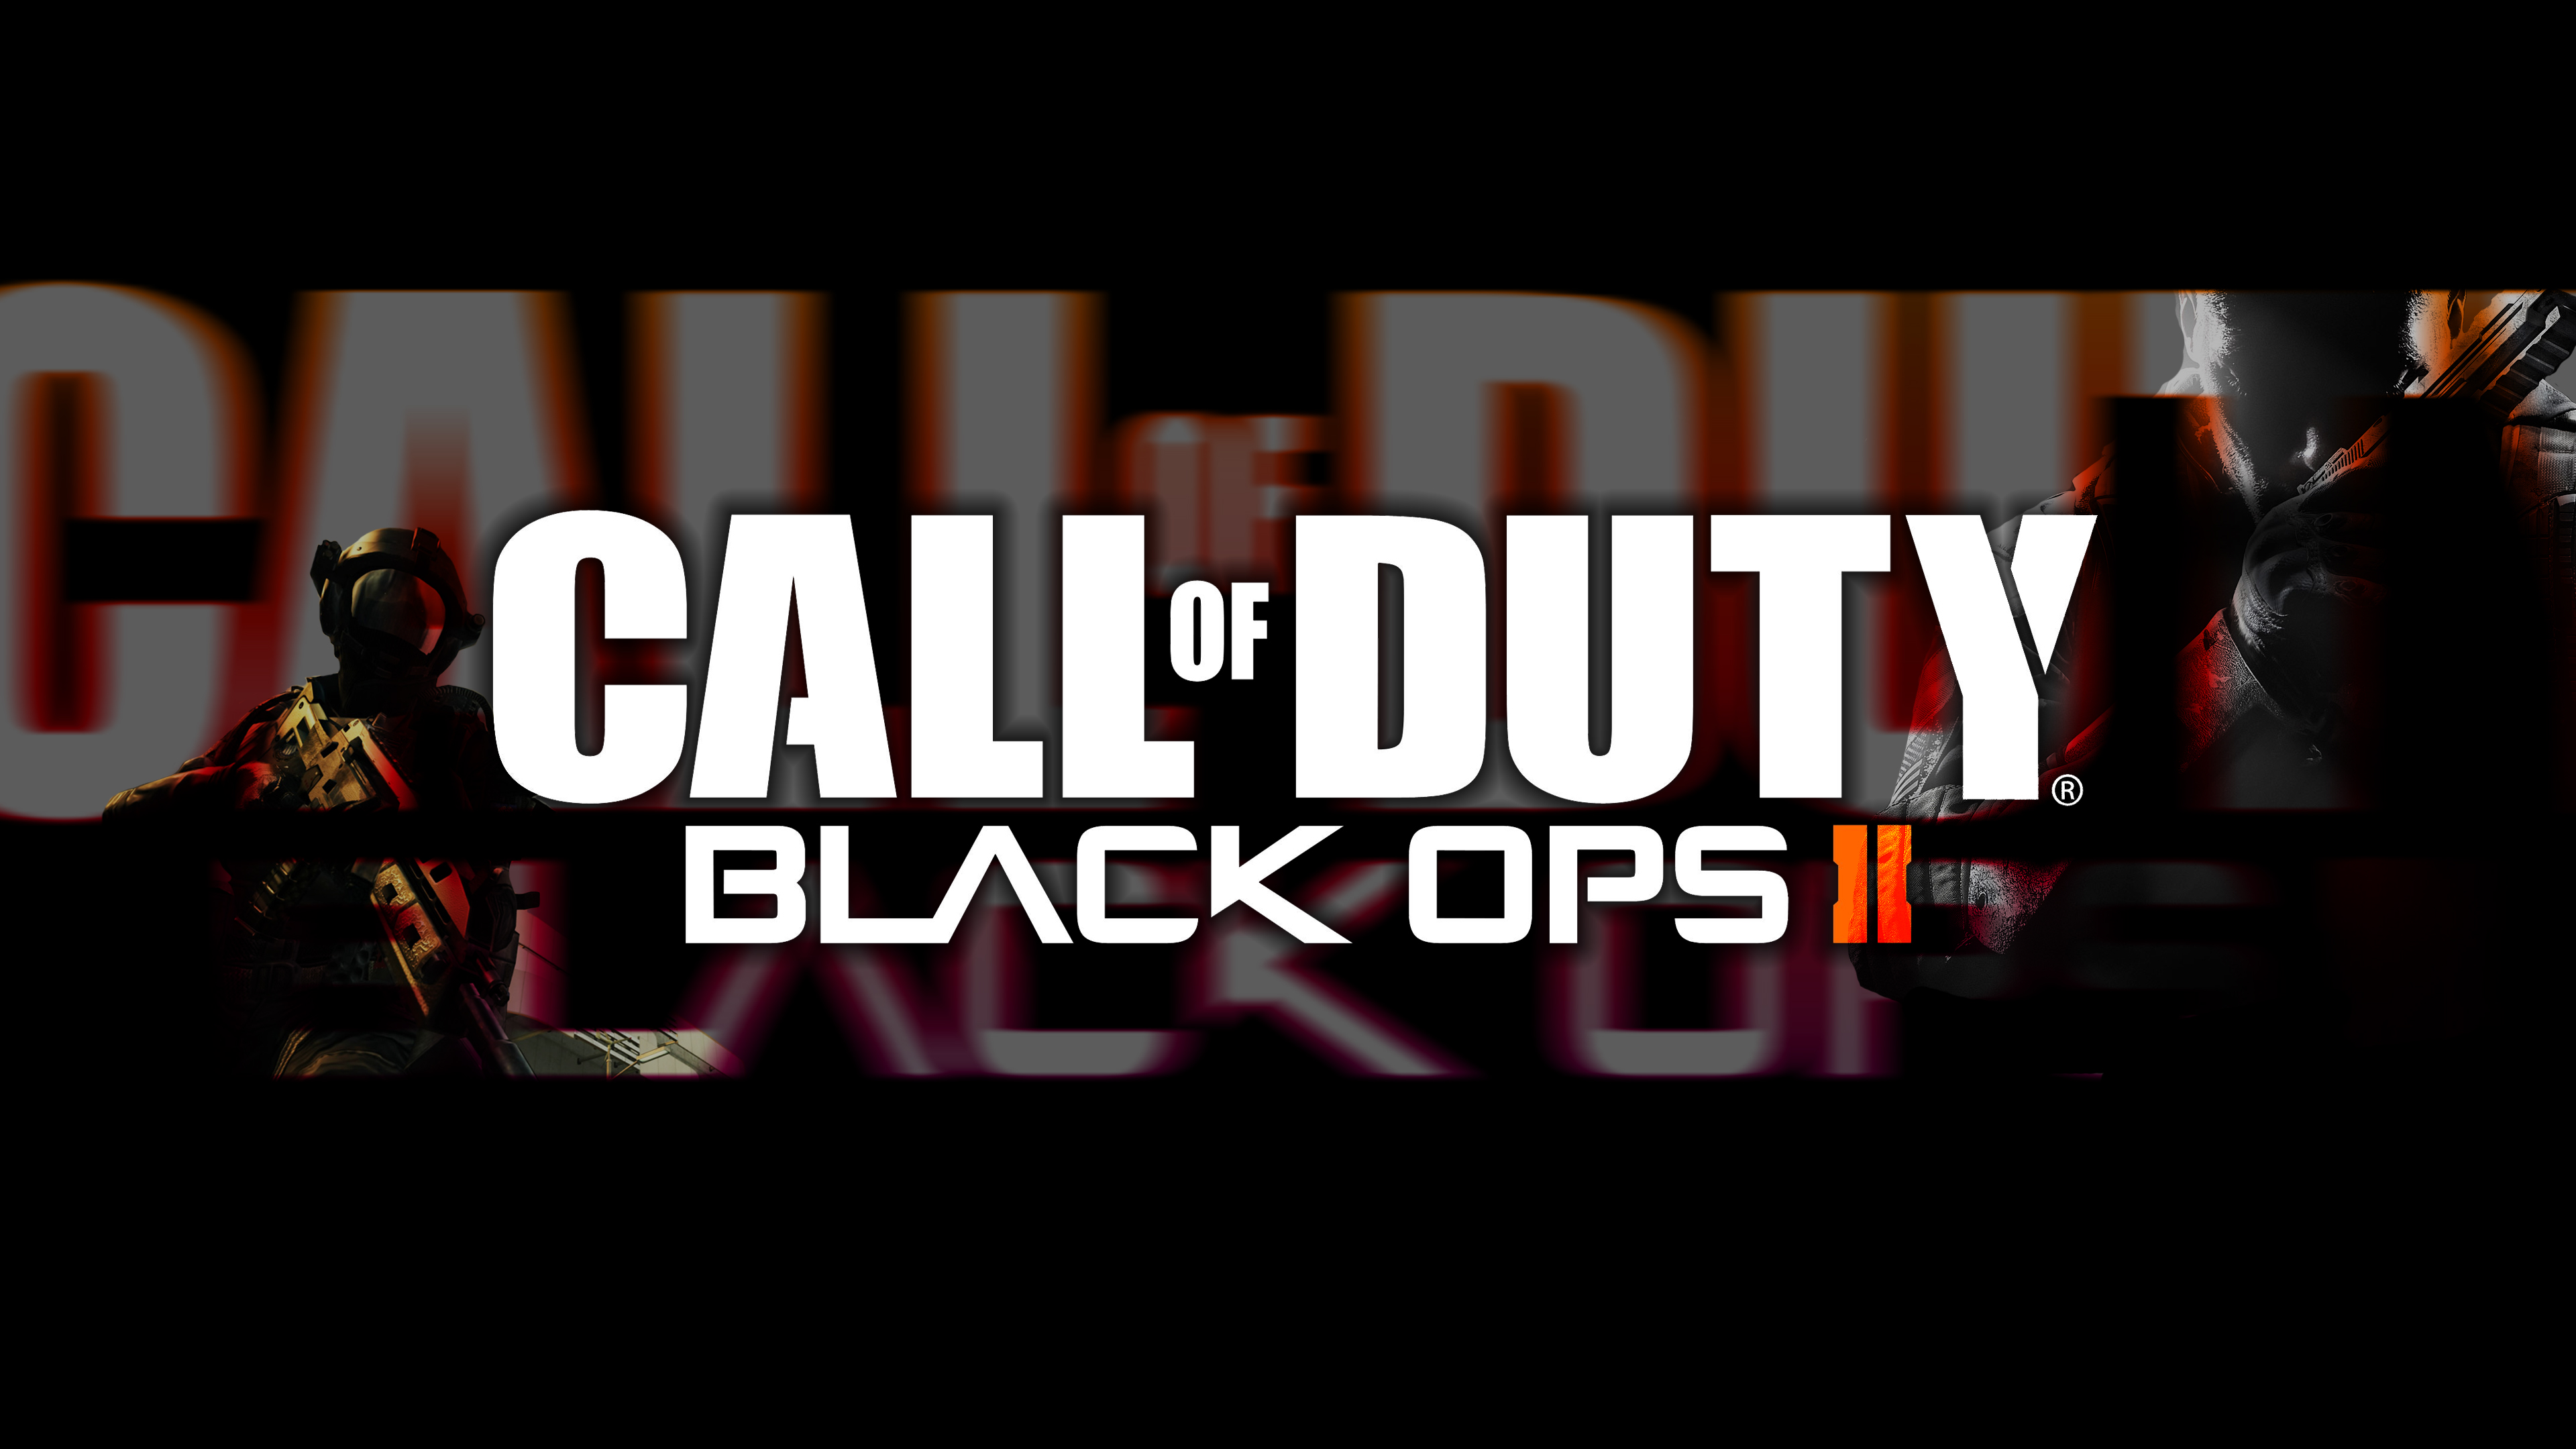 Call Of Duty Black Ops II Wallpaper[HD by JBele